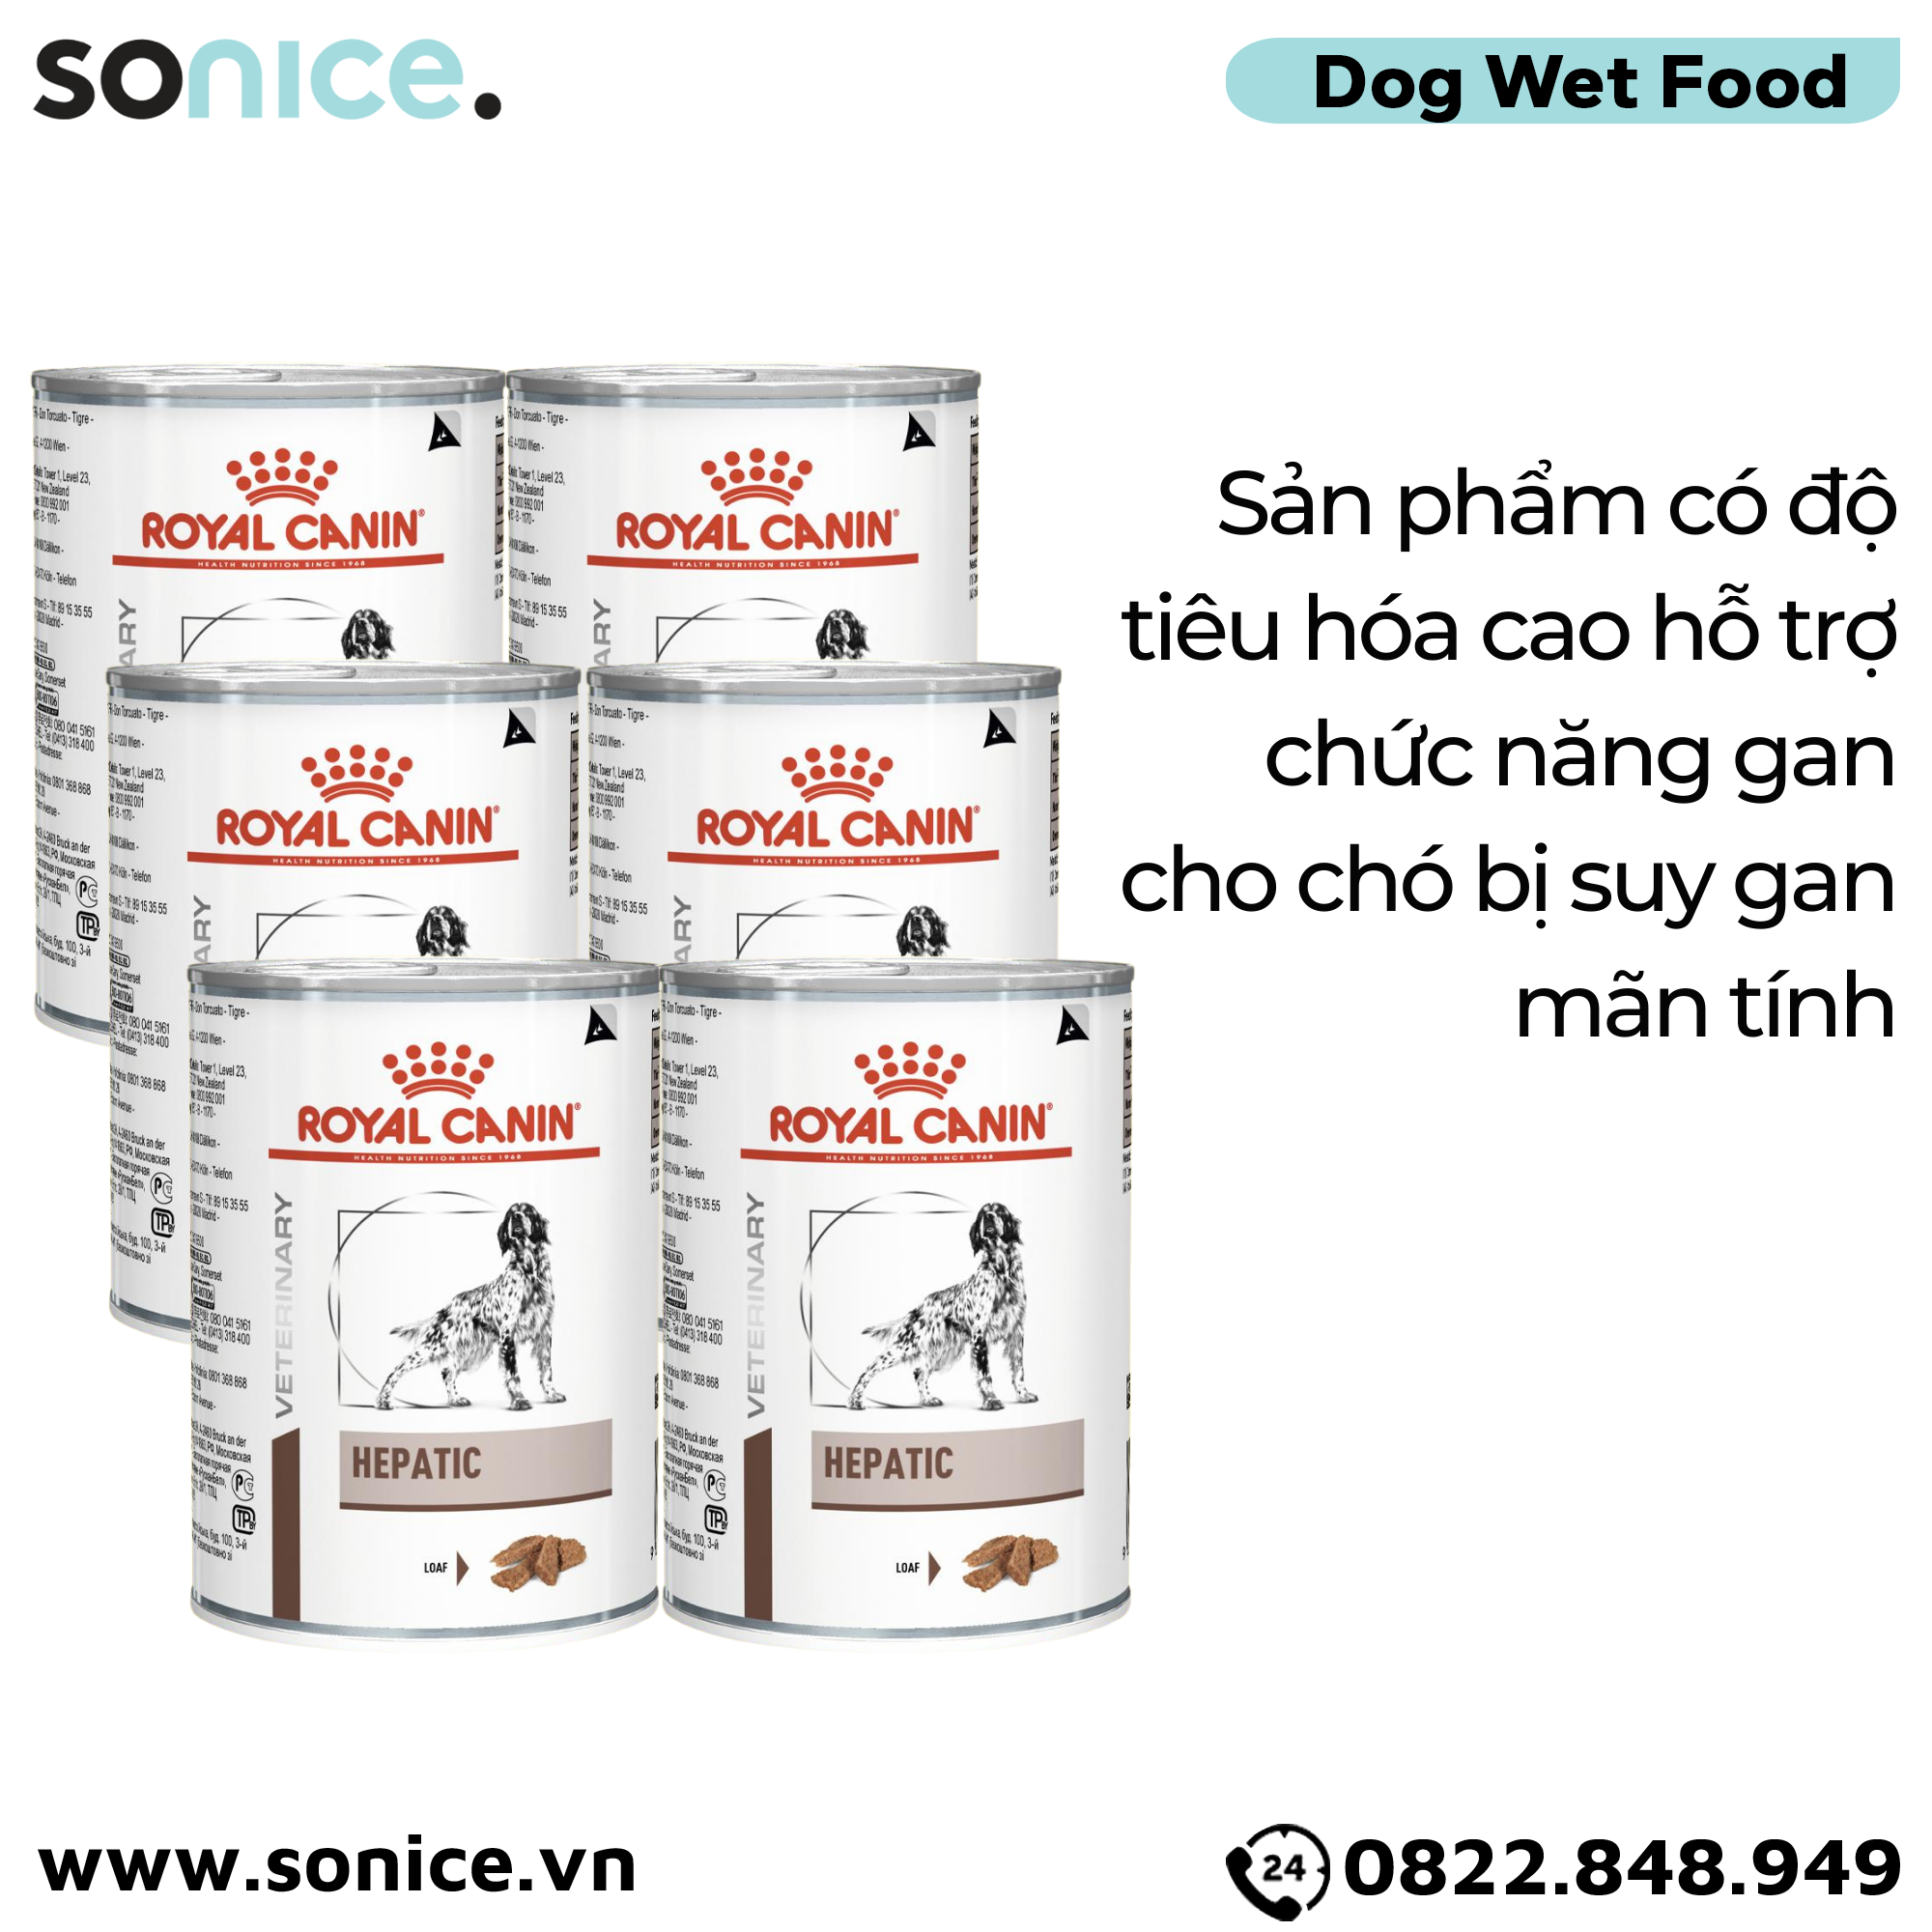  Combo Pate chó Royal Canin Hepatic Loaf 420g - 6 lon - Hỗ trợ chức năng gan SONICE. 